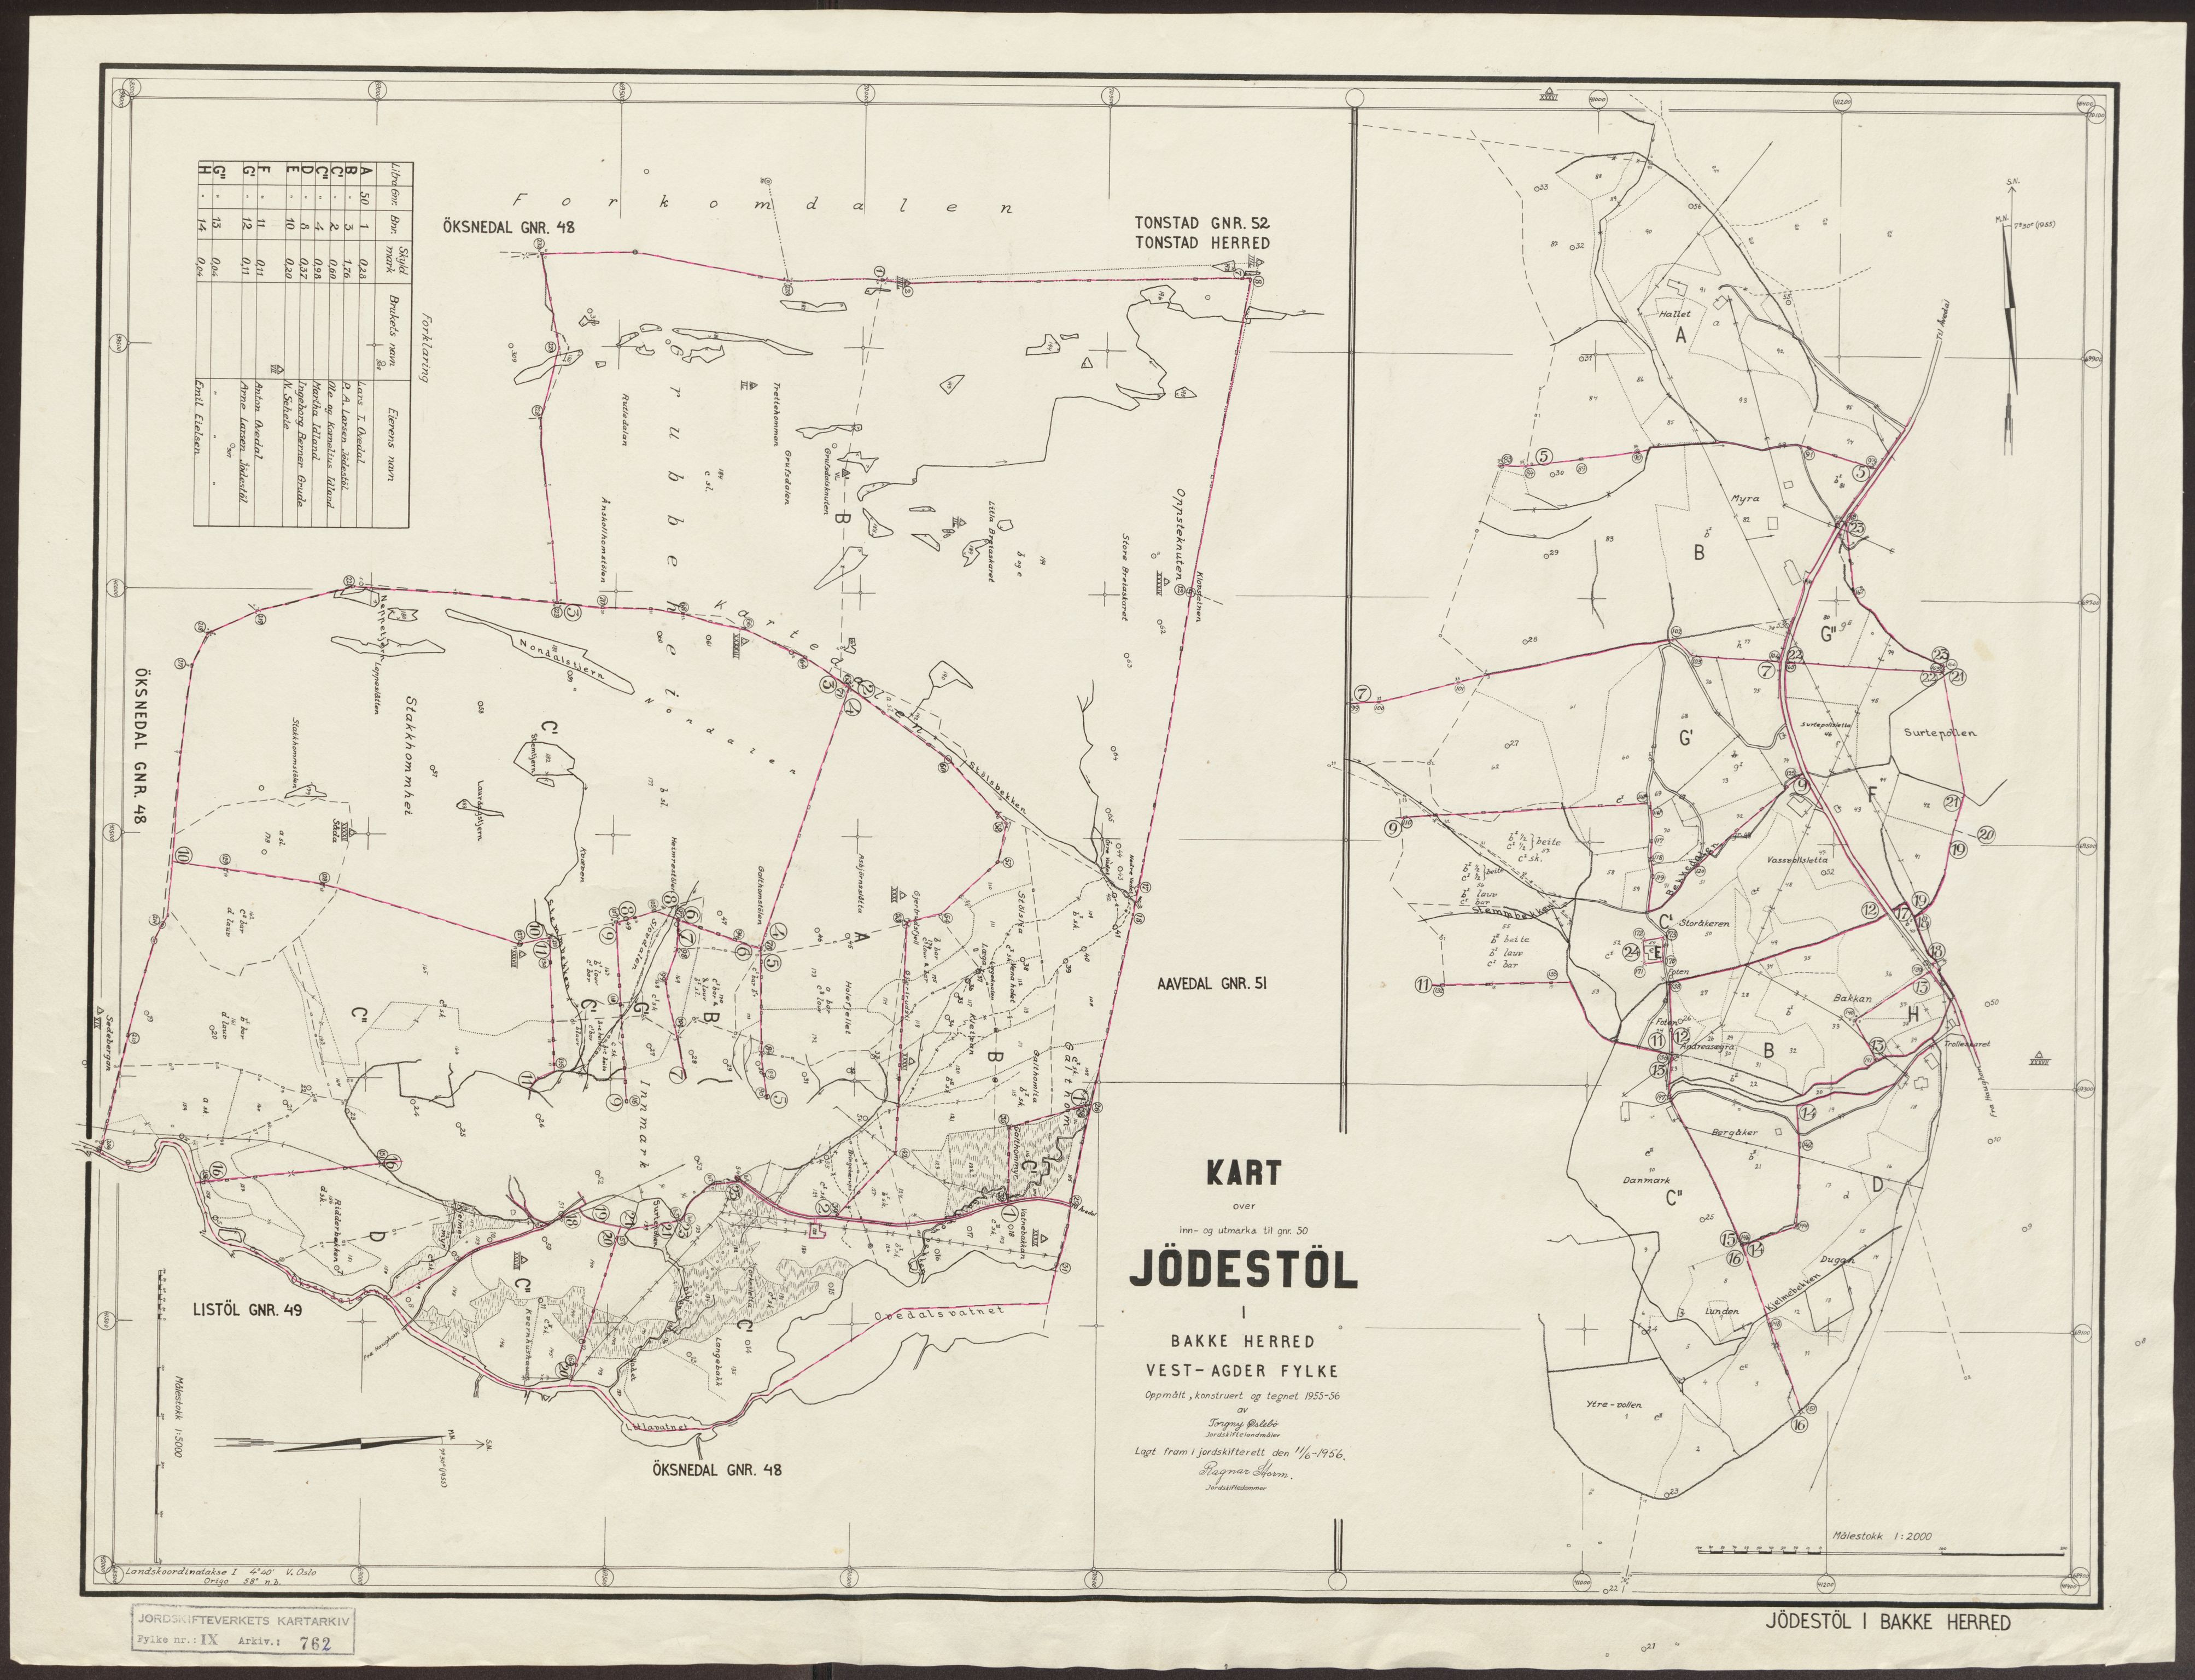 Jordskifteverkets kartarkiv, RA/S-3929/T, 1859-1988, s. 953